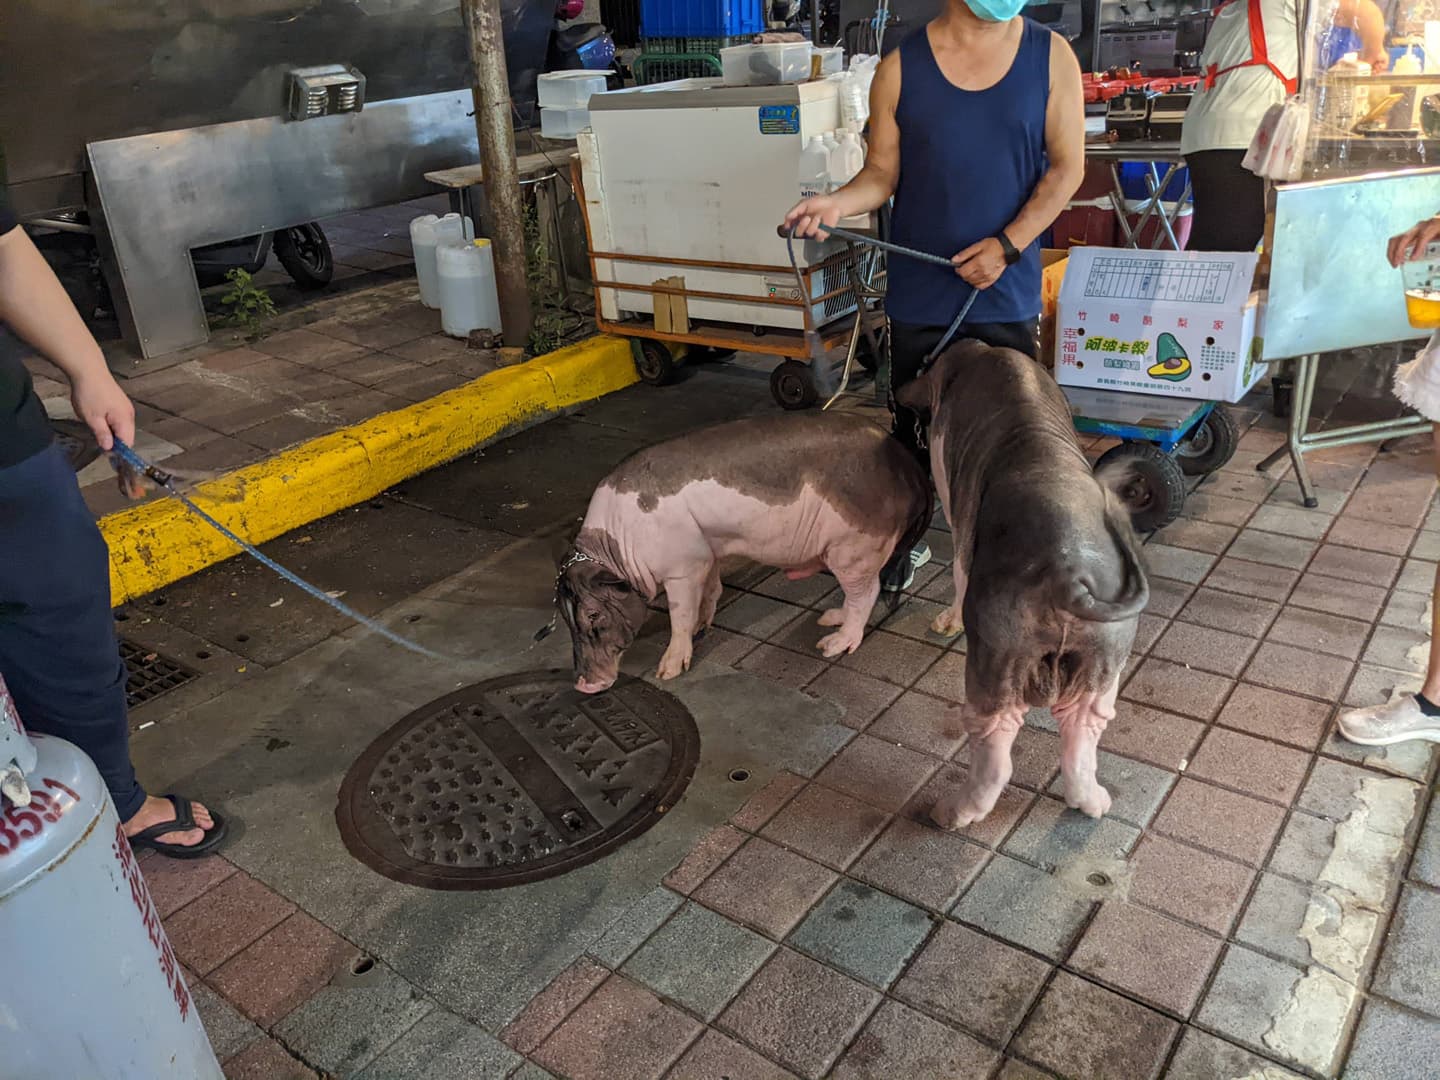 [路上奇景]在台北市寧夏夜市竟然出現好幾頭豬!? | OurShare生活紀錄